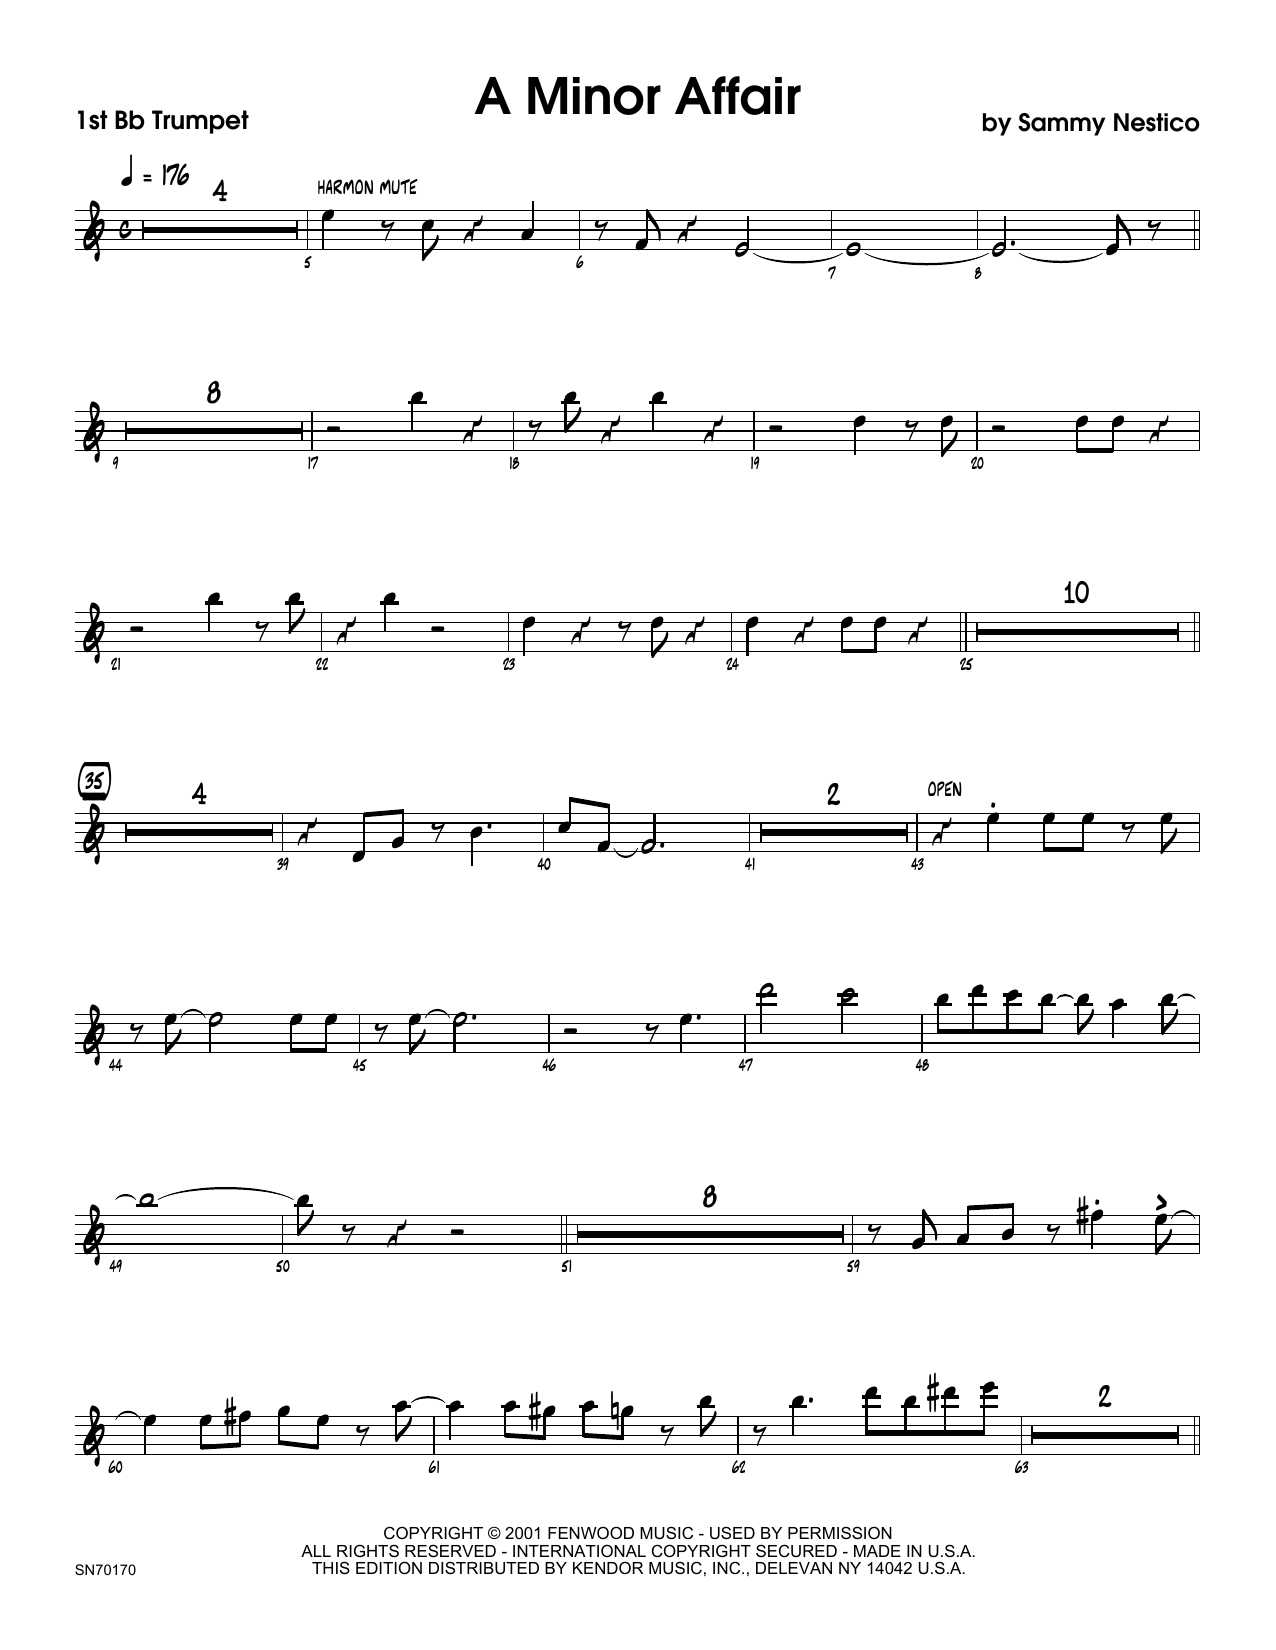 Download Sammy Nestico A Minor Affair - 1st Bb Trumpet Sheet Music